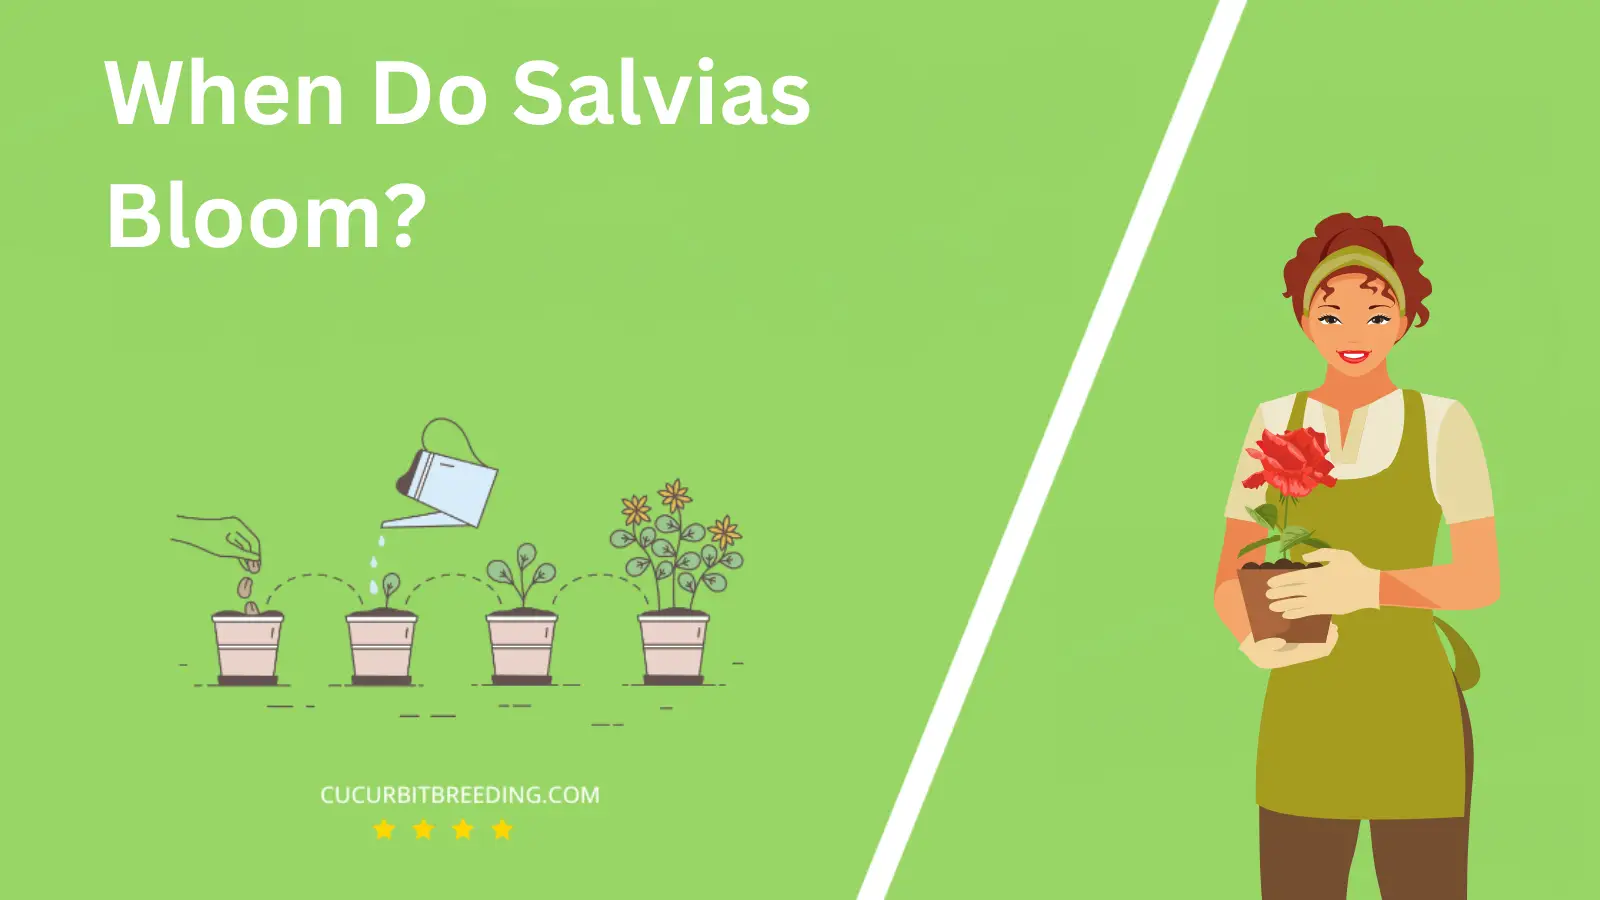 When Do Salvias Bloom?